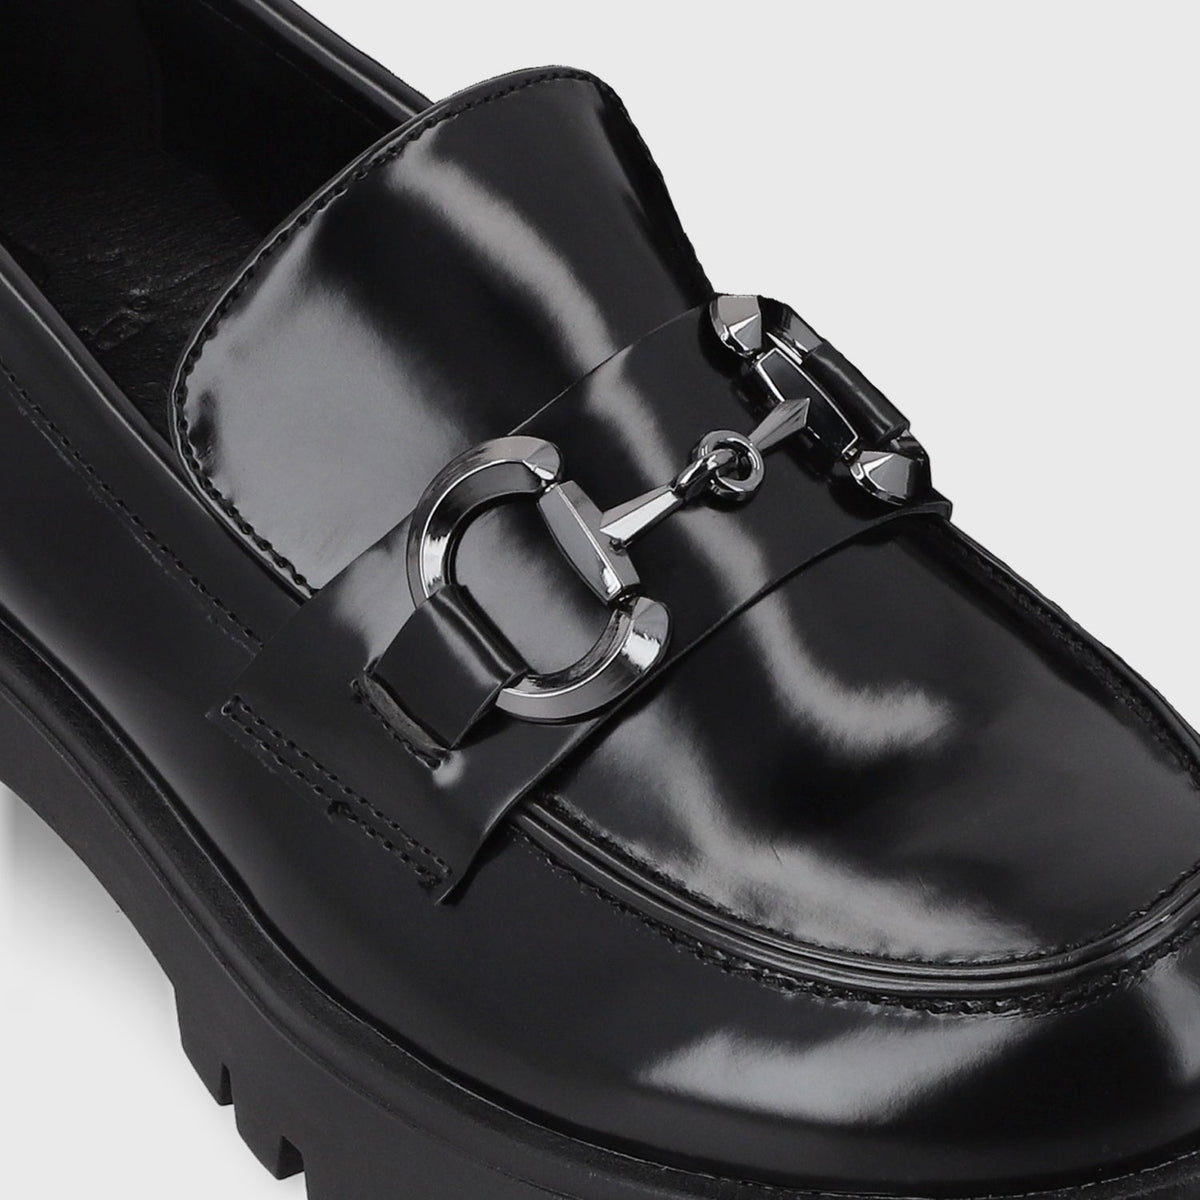 Zapato Plataforma Negro Mujer 46401 - Gotta Chile